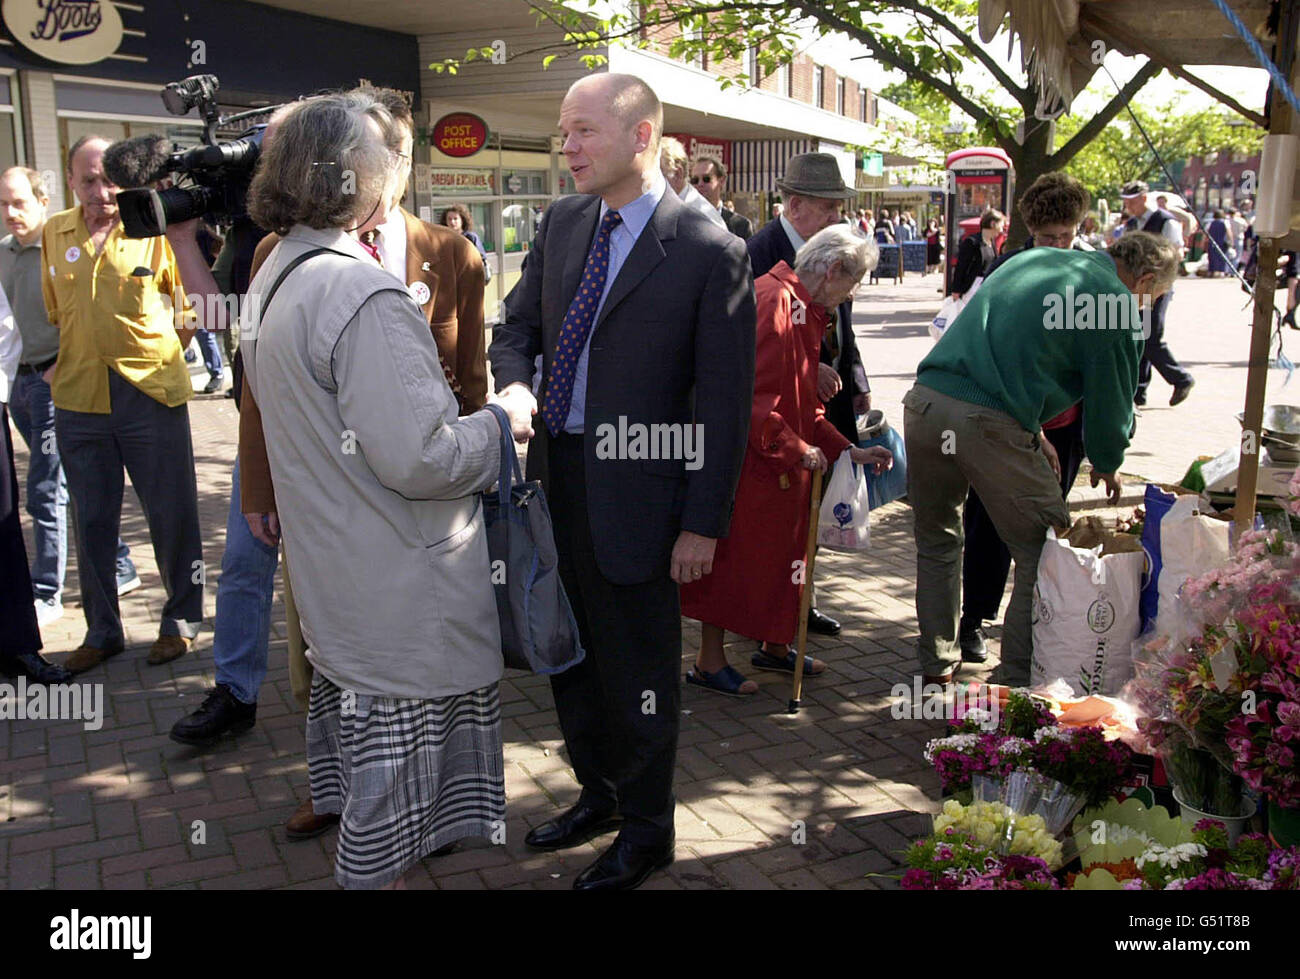 Der konservative Staatschef William Hague trifft sich bei einem kurzen Besuch in Harborne in Birminghham mit Mitgliedern der Öffentlichkeit. Er war in den Midlands, um an einem "Keep the Pound Action Day" teilzunehmen. Stockfoto